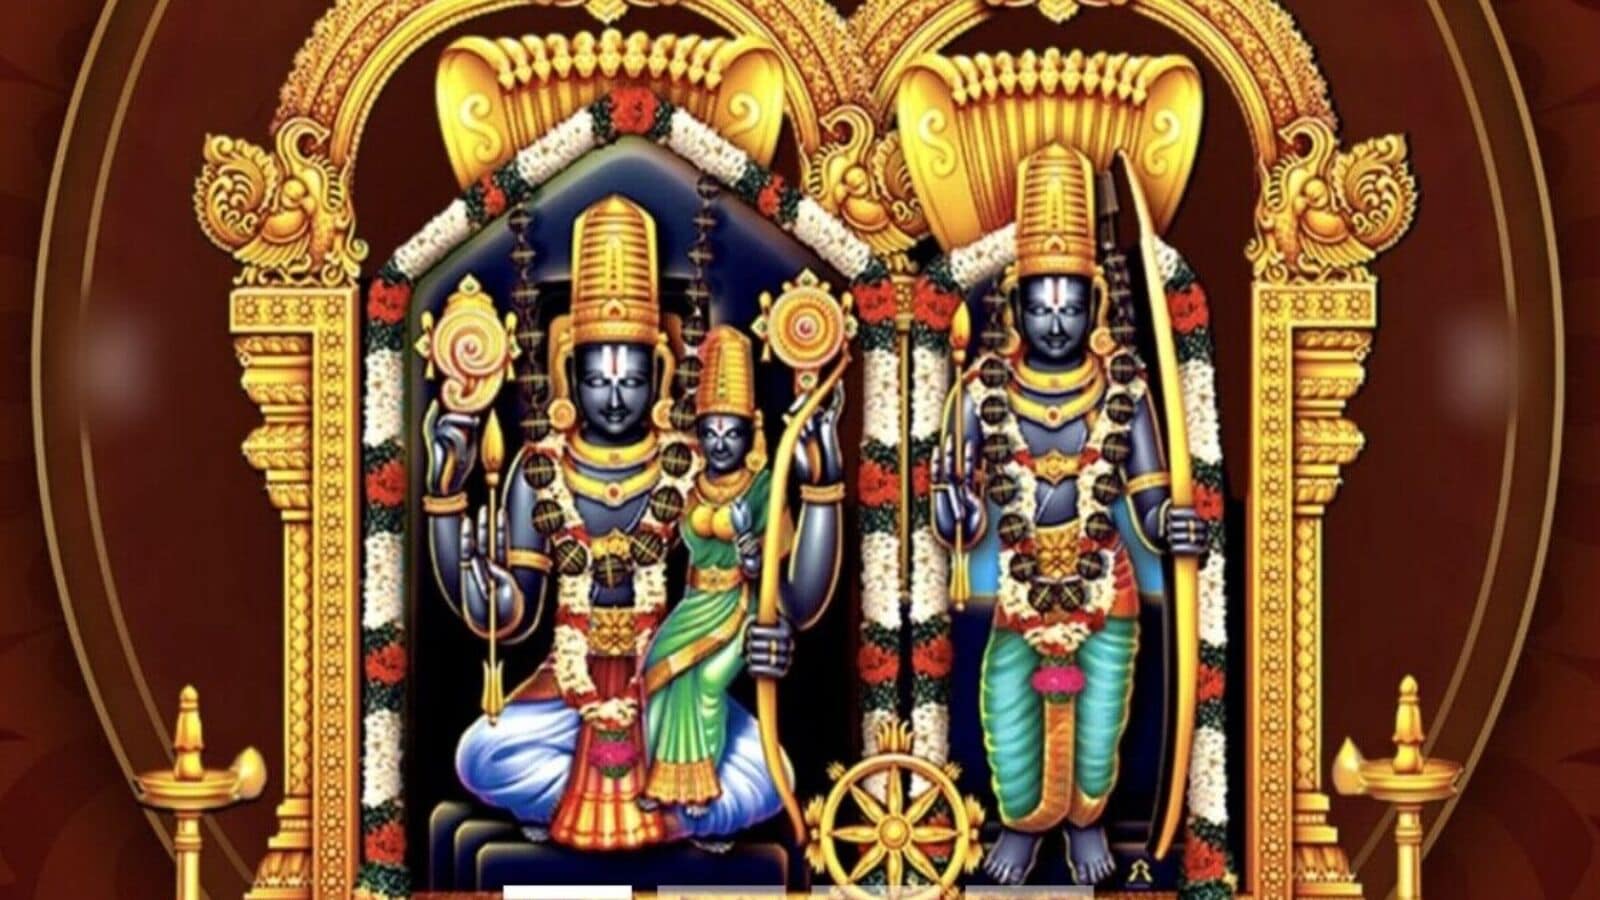 Bhadrachalam Kalyanam Live : భద్రాద్రి సీతారాముల కల్యాణం లైవ్ పై సస్పెన్స్, ఈసీ ఆంక్షలు సడలిస్తుందా?